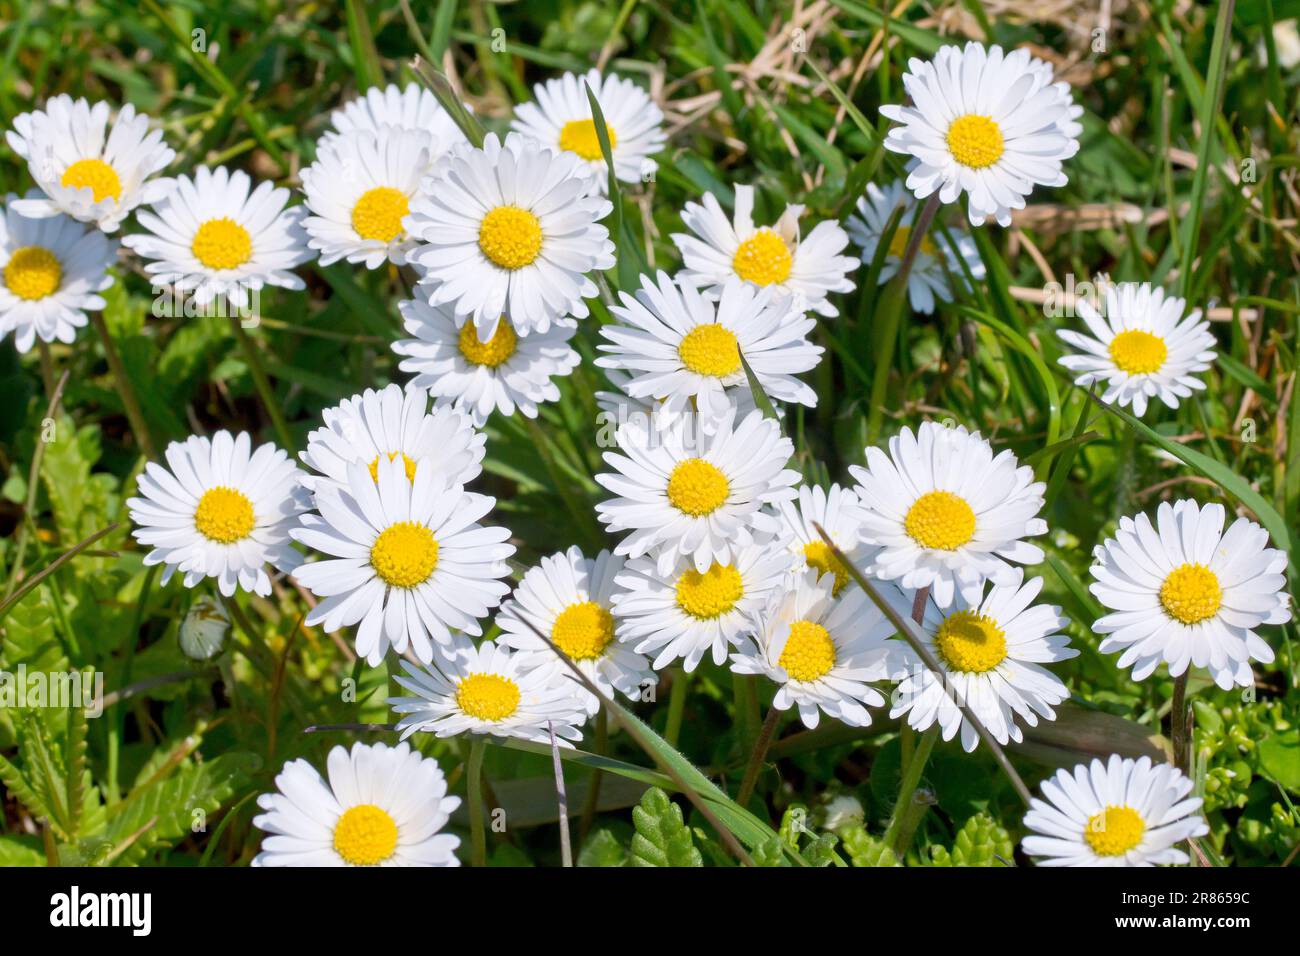 Daisy oder Daisies (bellis perennis), Nahaufnahme einer Gruppe der sehr verbreiteten Wildblumen, die im rauen Gras am Rand eines Parks wachsen. Stockfoto